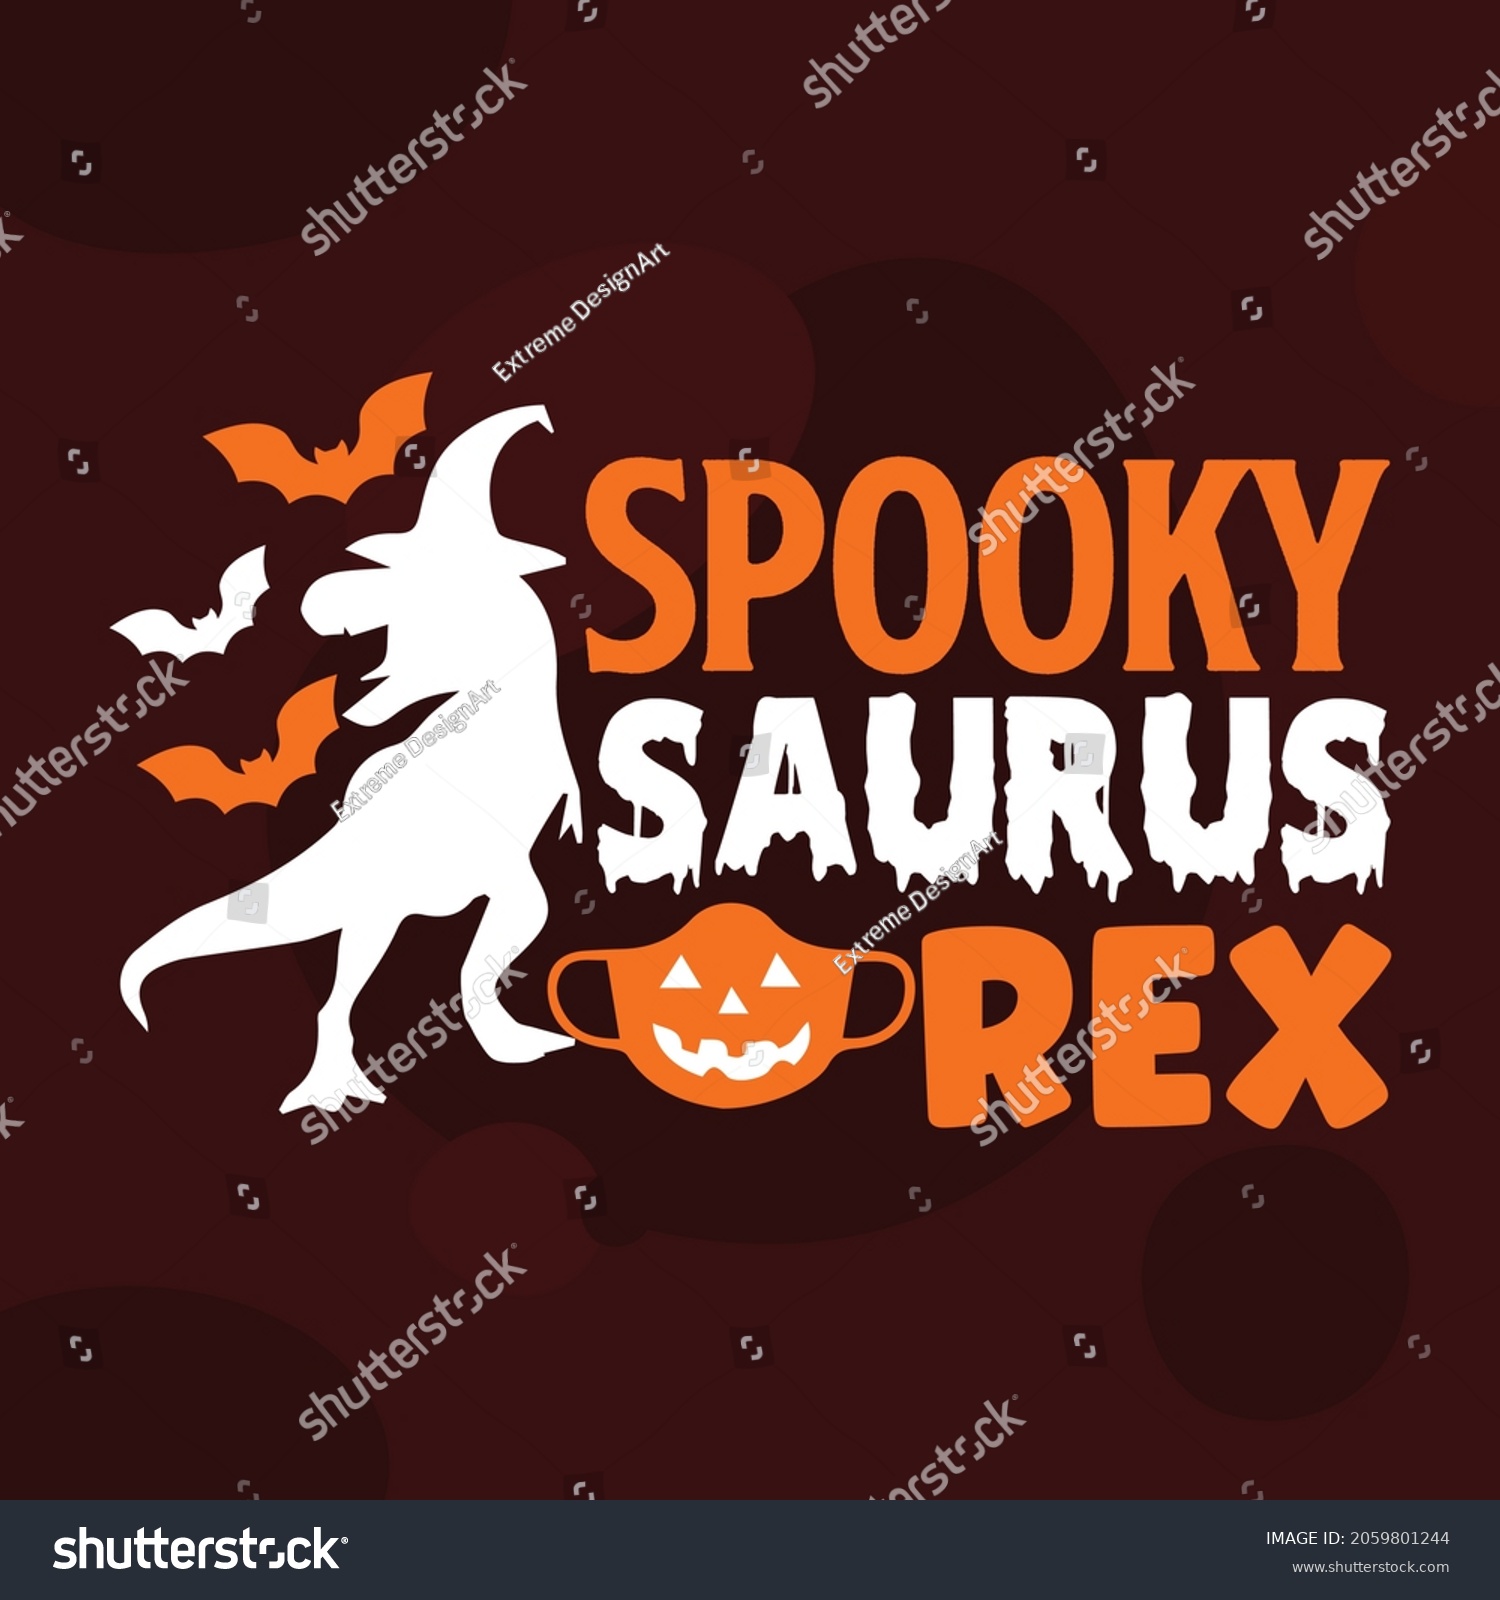 SVG of Spooky Saurus rex SVG T-shirt, Halloween T-shirt, Halloween Poster, Background svg